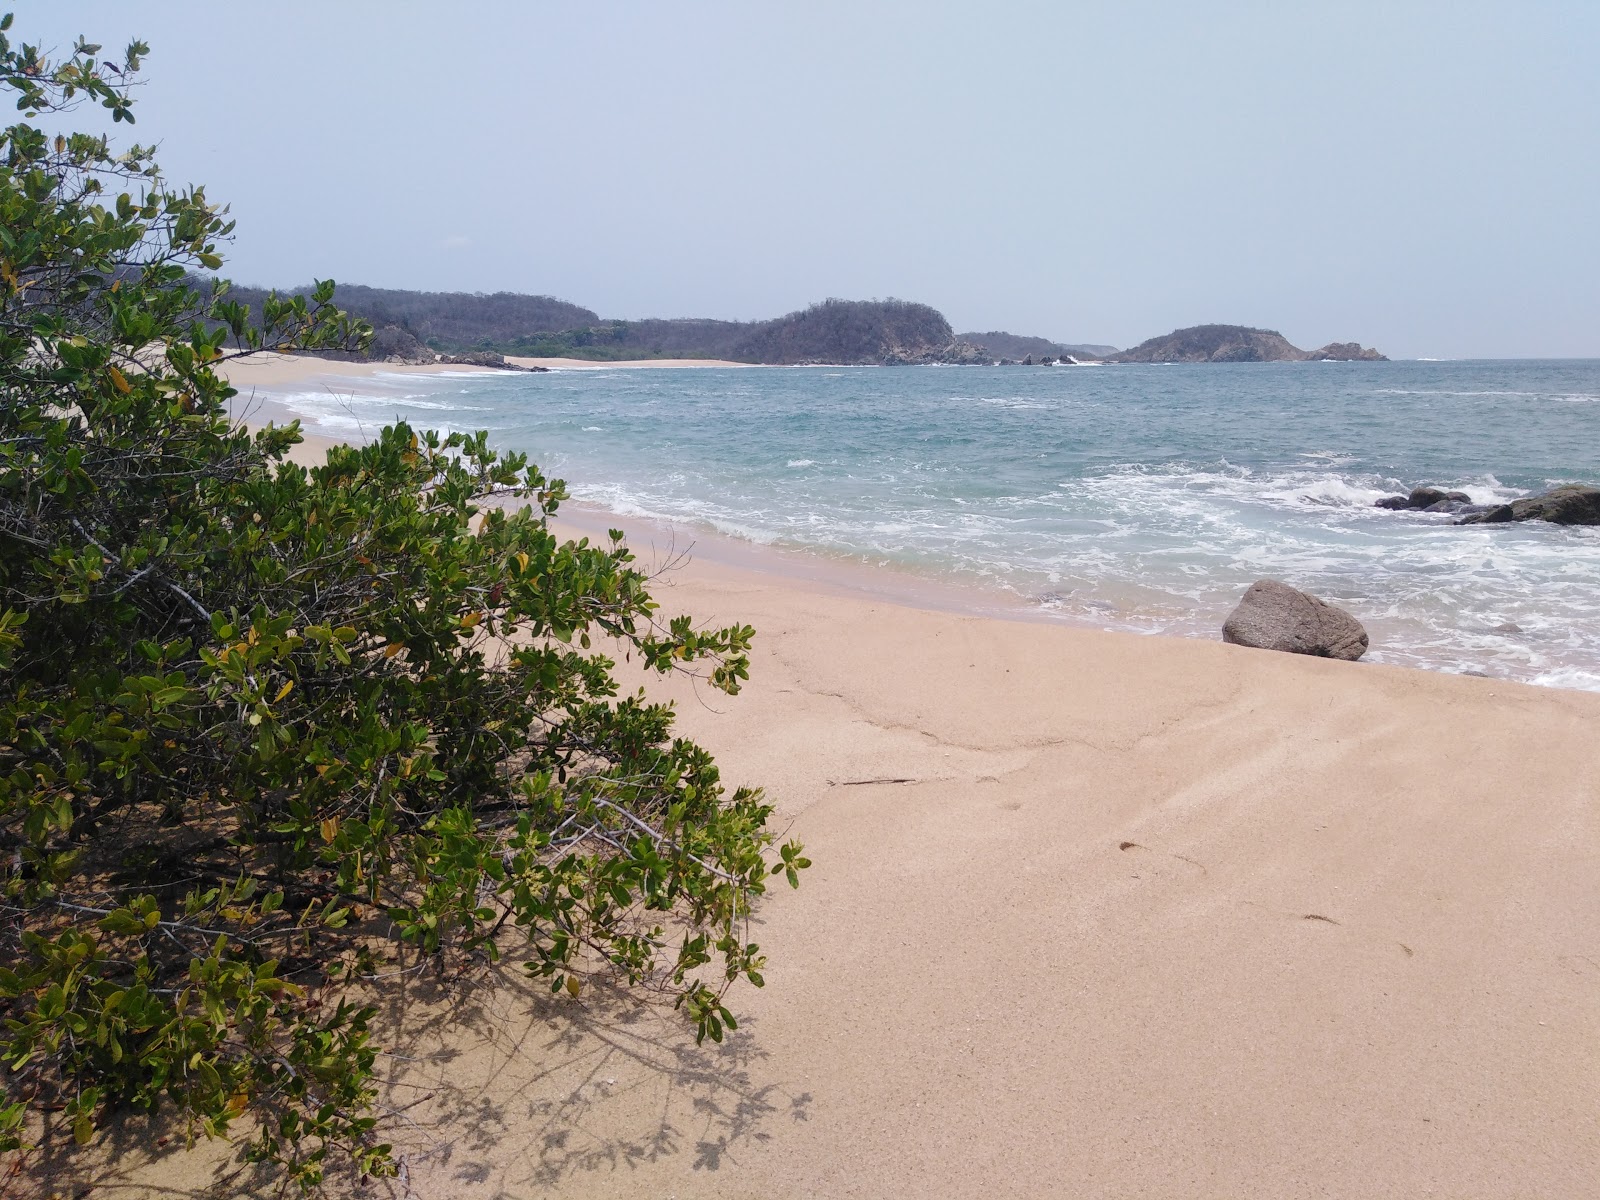 Punta Arena beach'in fotoğrafı geniş plaj ile birlikte